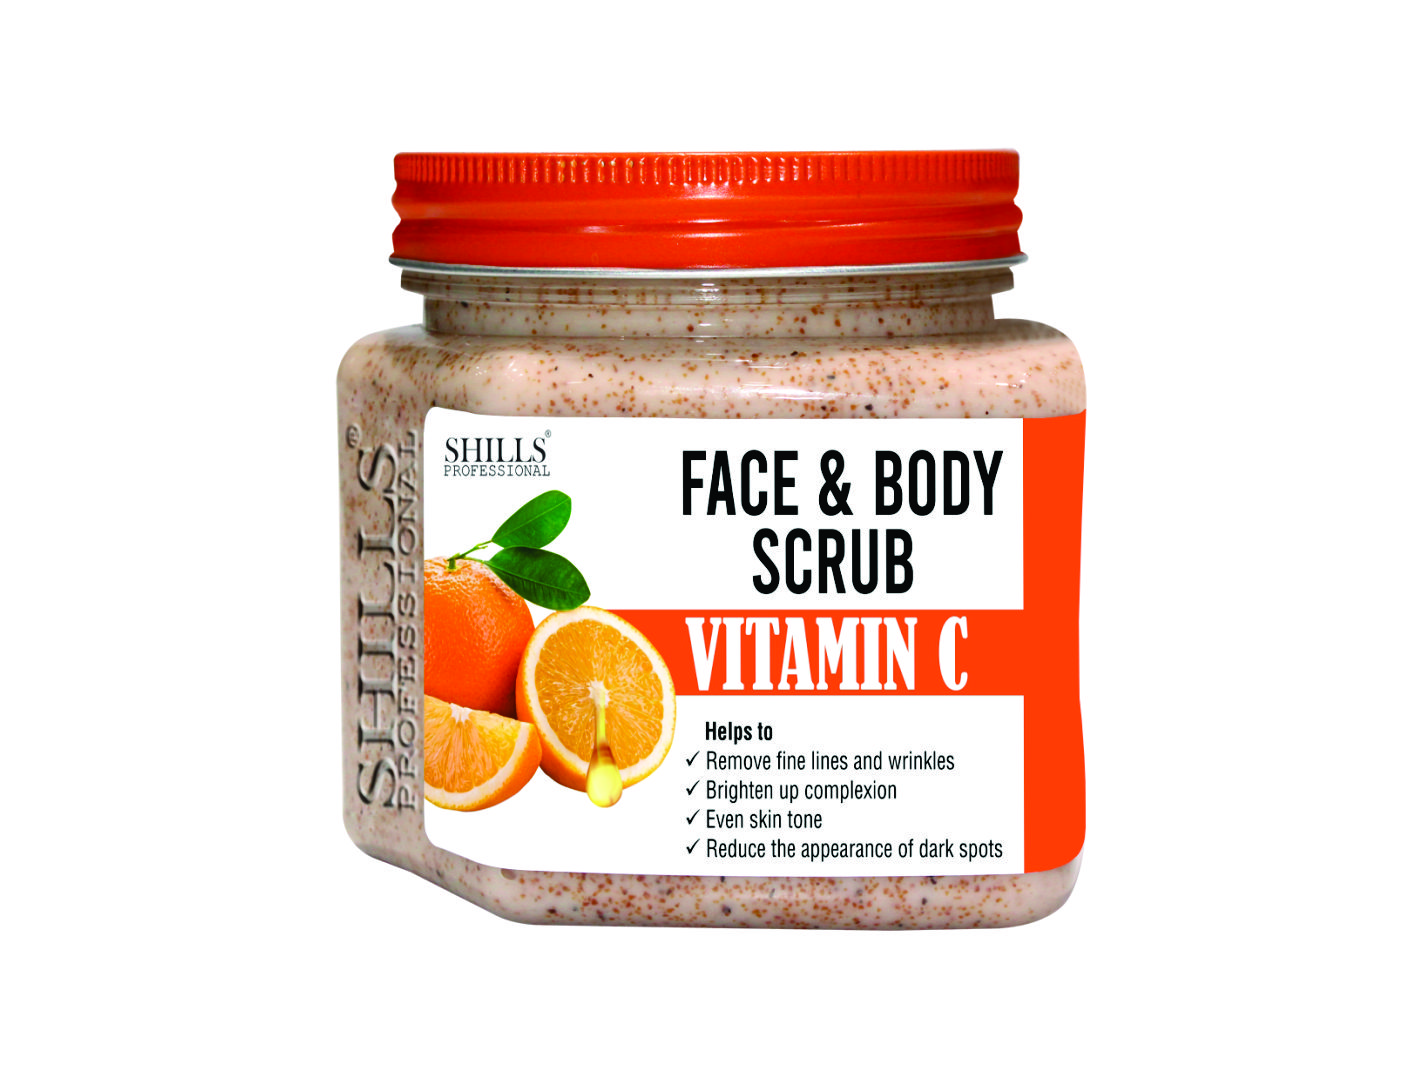 Shills Professional Face & Body Vitamin C Scrub - Price in India, Buy  Shills Professional Face & Body Vitamin C Scrub Online In India, Reviews,  Ratings & Features